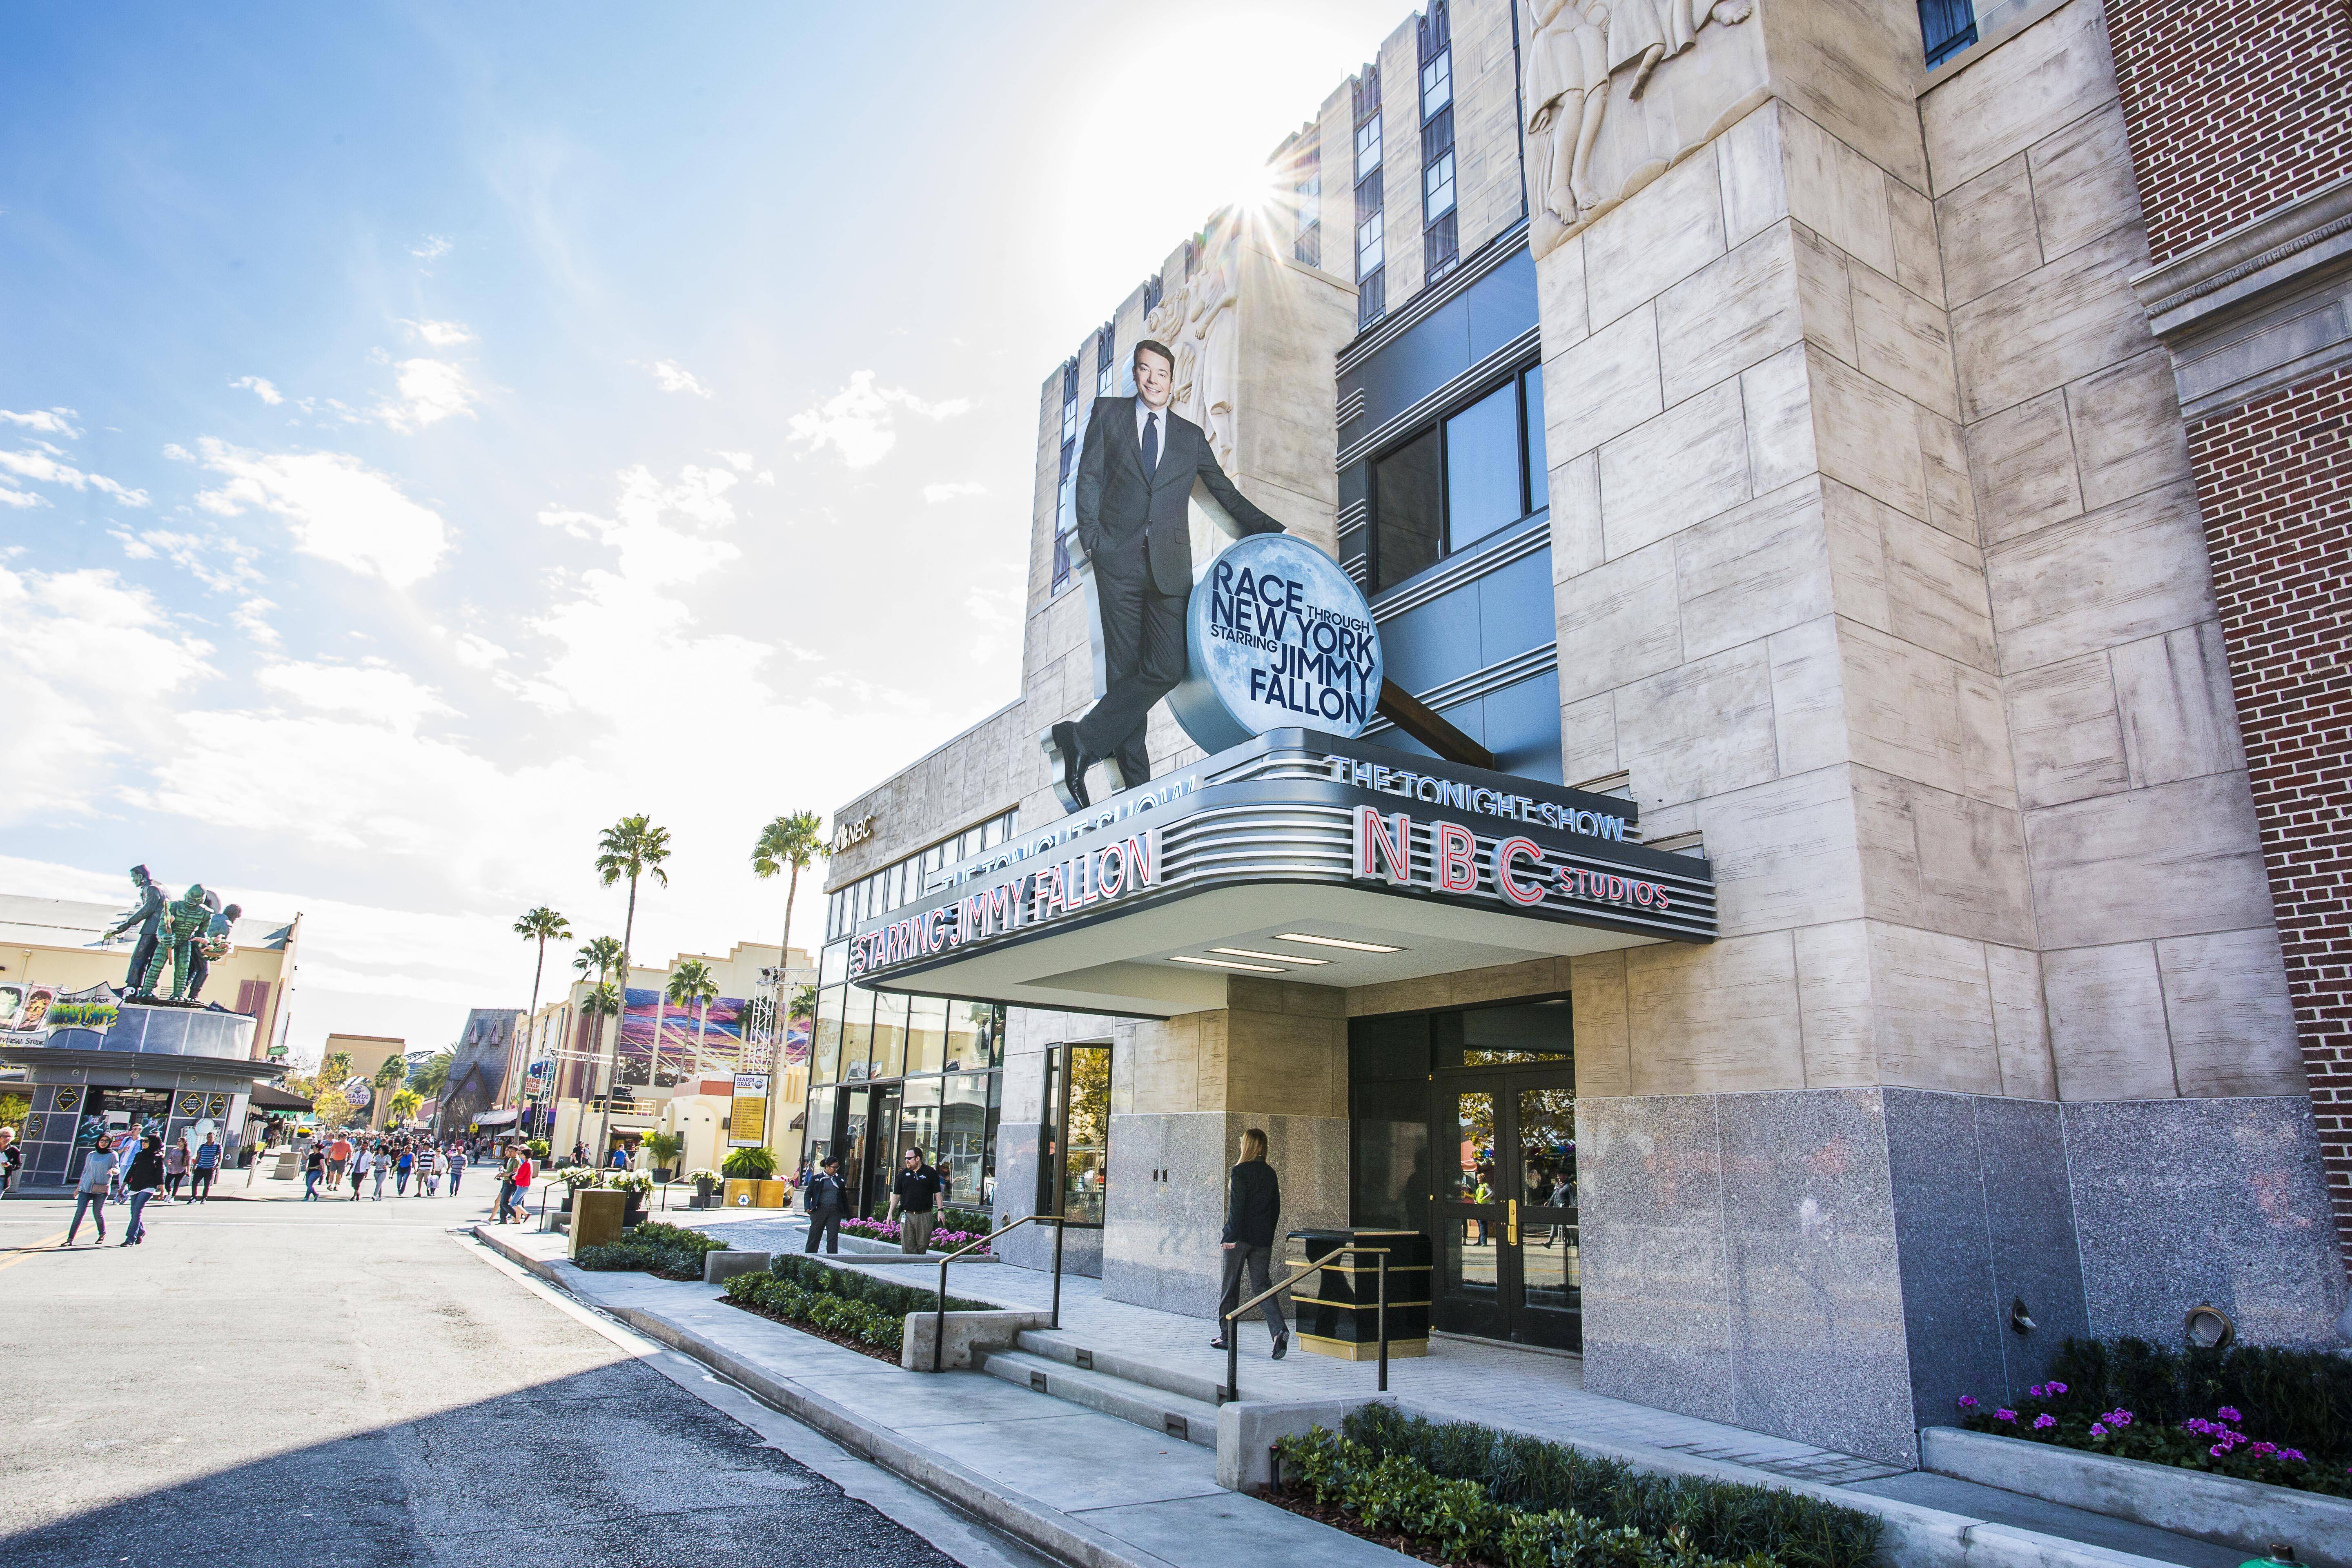 Imagens da atração Race Through New York Starring Jimmy Fallon, inaugurada neste mês no Universal Studios, em Orlando. Foto: Divulgação/Universal Orlando